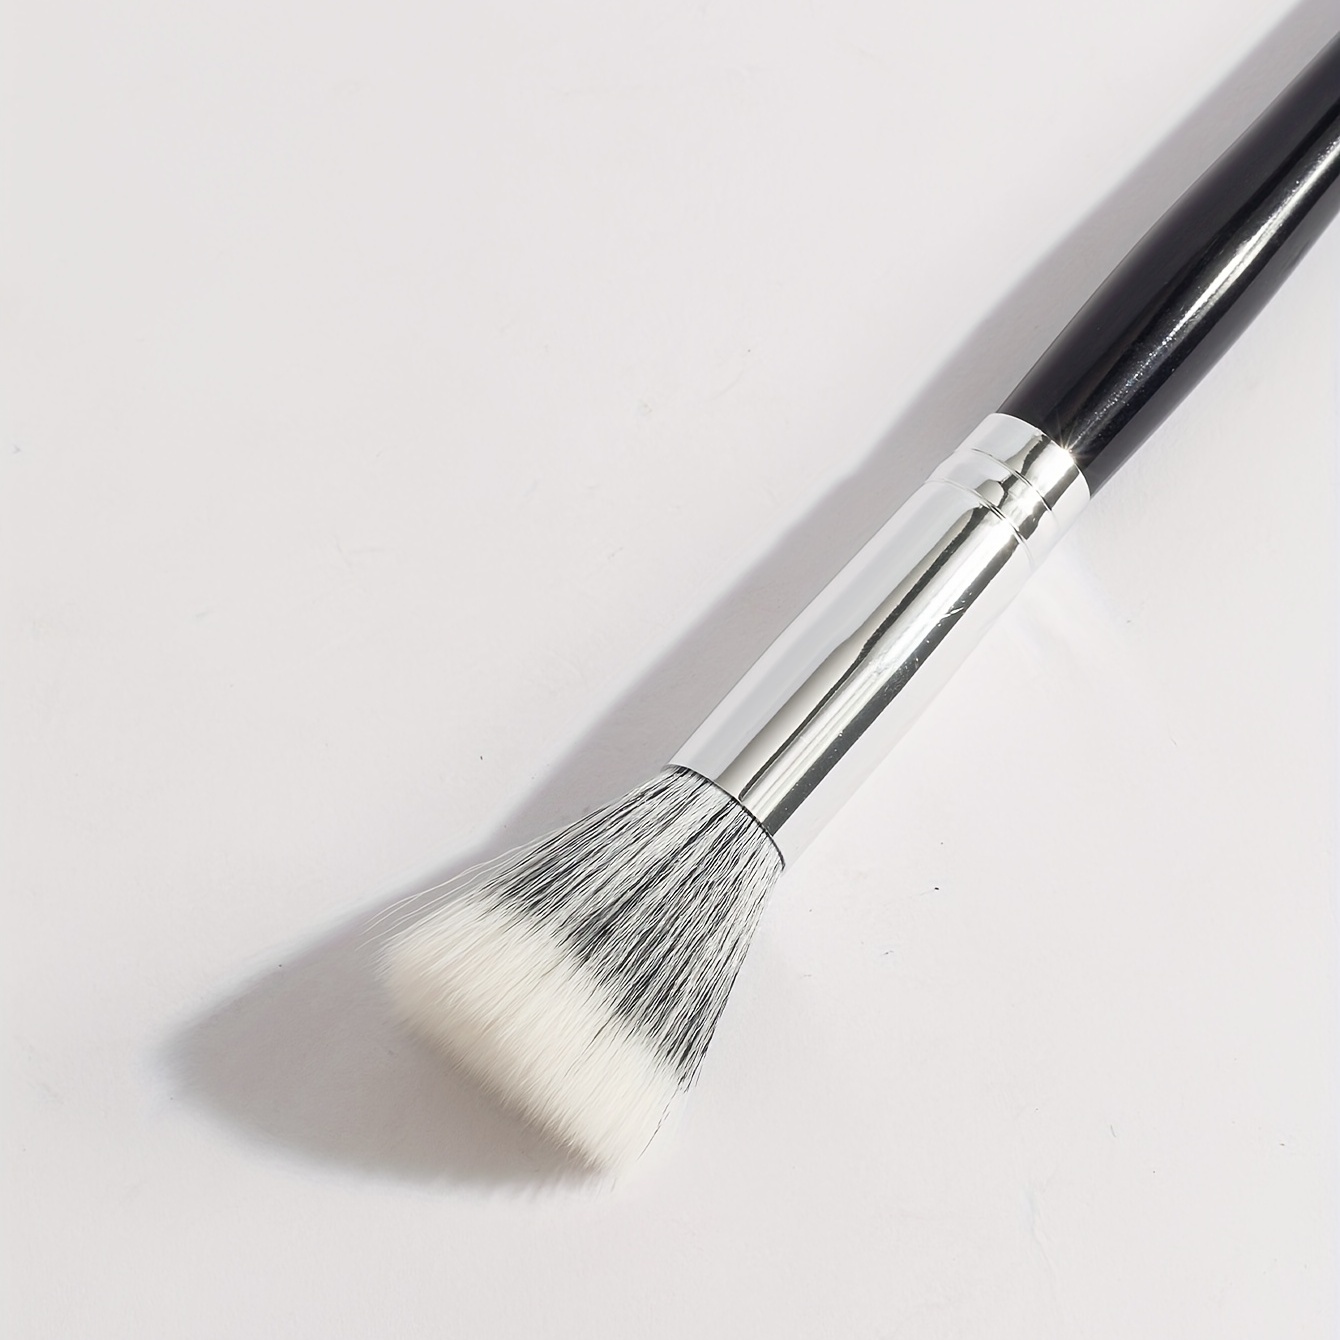 Stippling Makeup Brush